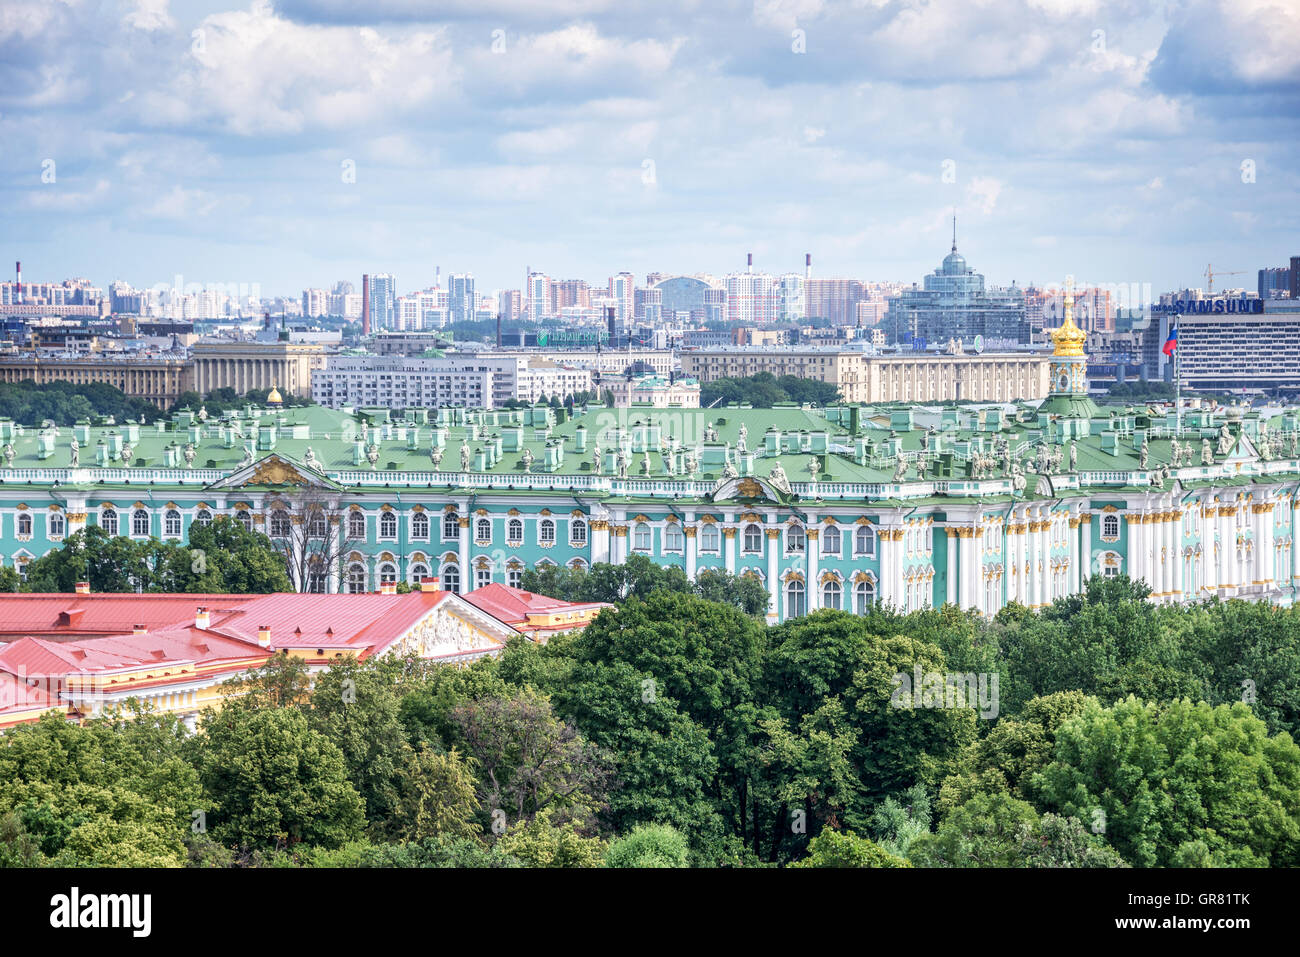 Vue aérienne de l'Ermitage, Saint-Pétersbourg, Russie Banque D'Images